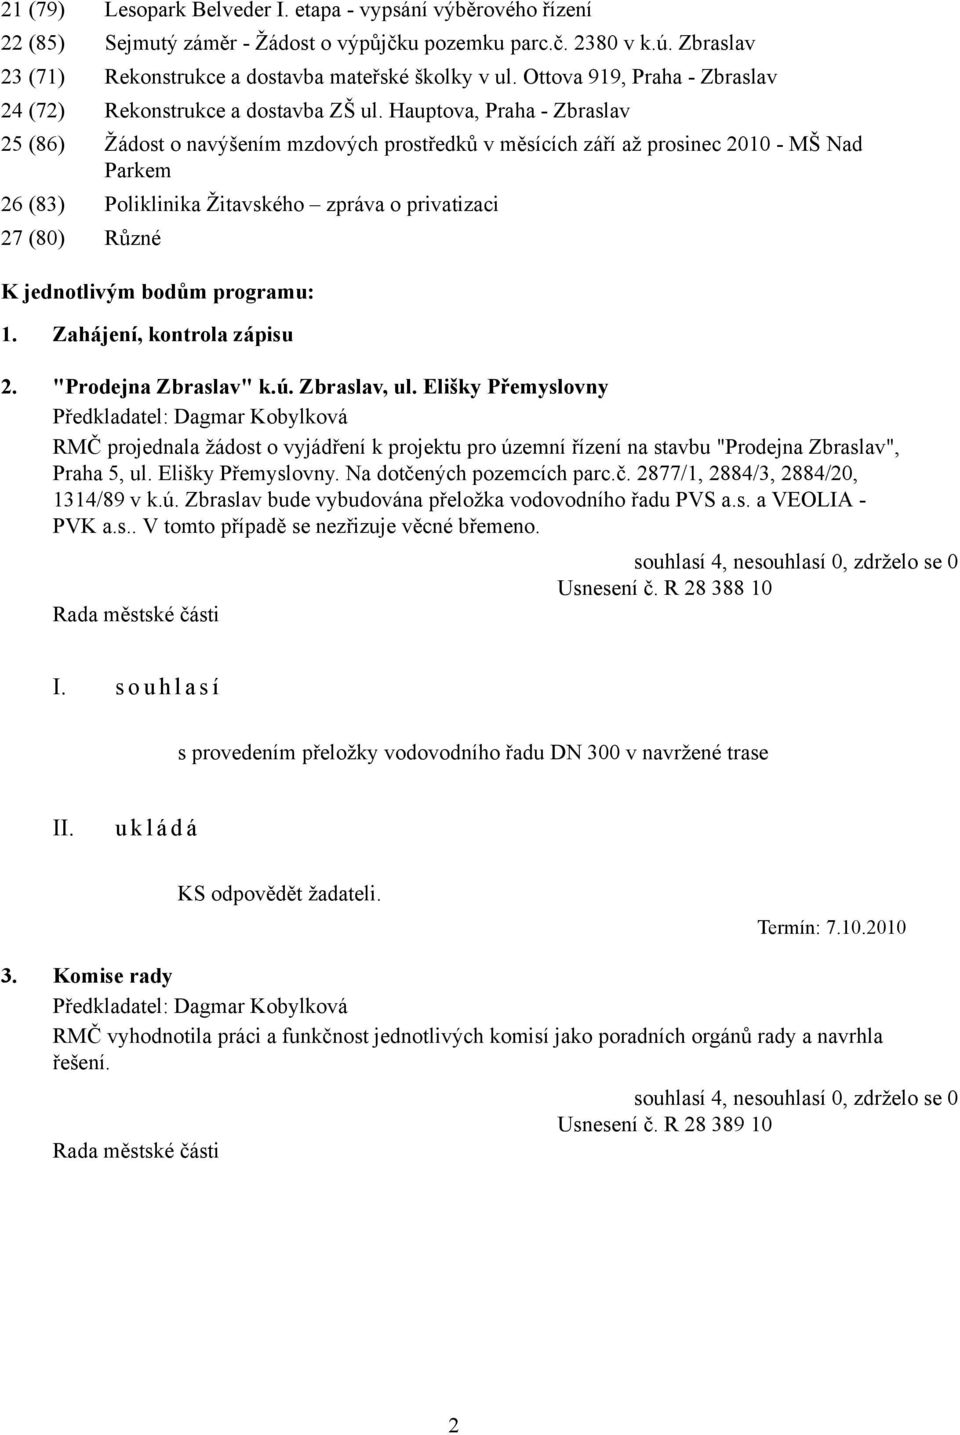 Hauptova, Praha - Zbraslav 25 (86) Žádost o navýšením mzdových prostředků v měsících září až prosinec 2010 - MŠ Nad Parkem 26 (83) Poliklinika Žitavského zpráva o privatizaci 27 (80) Různé K